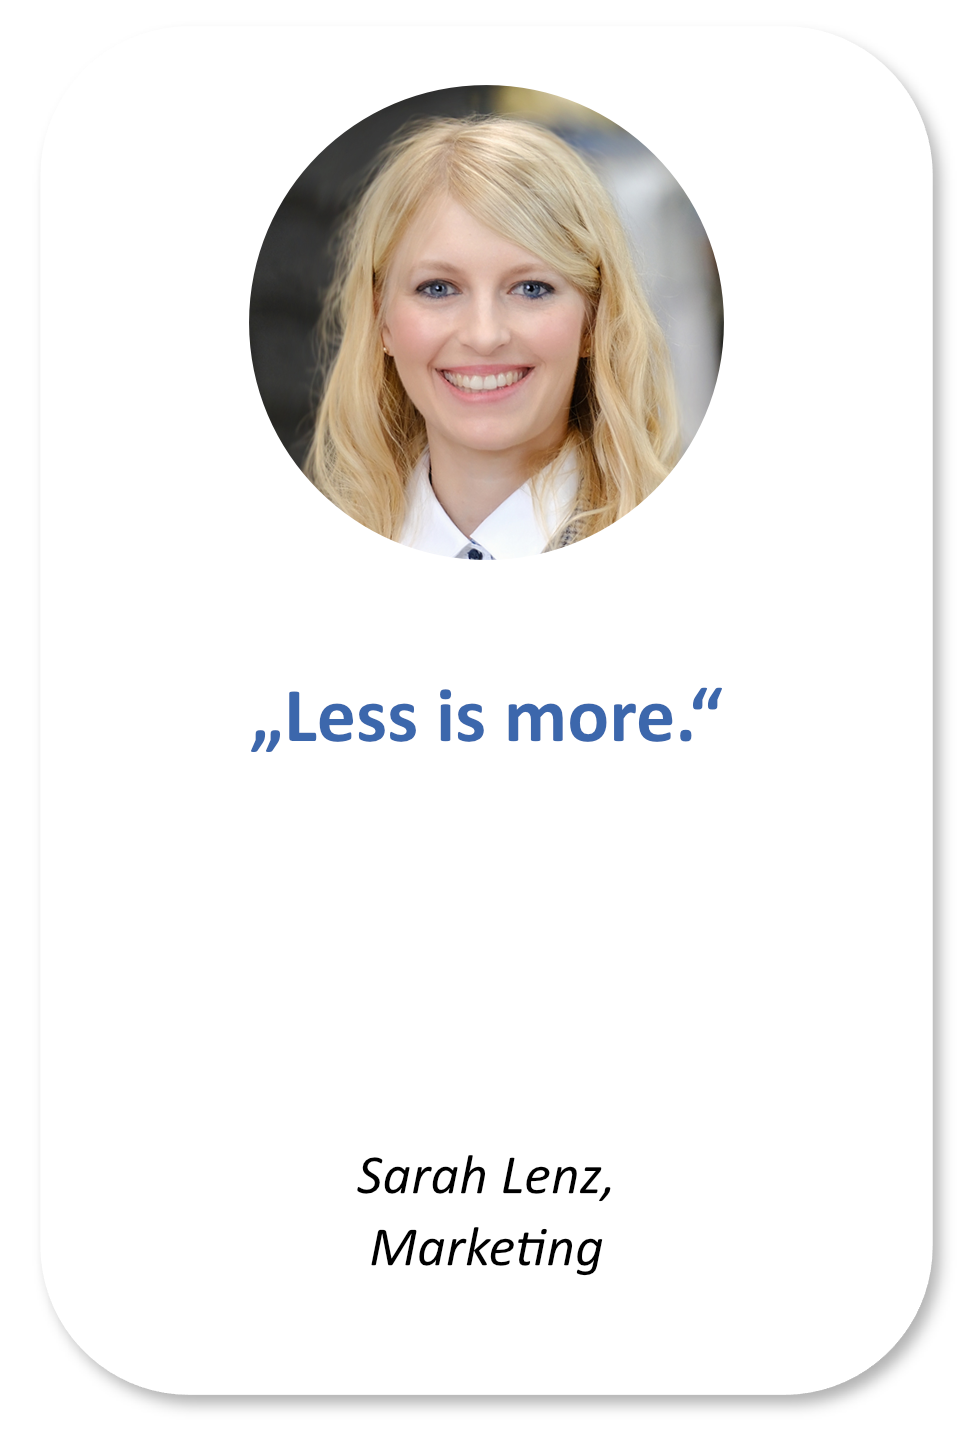 Sarah Lenz